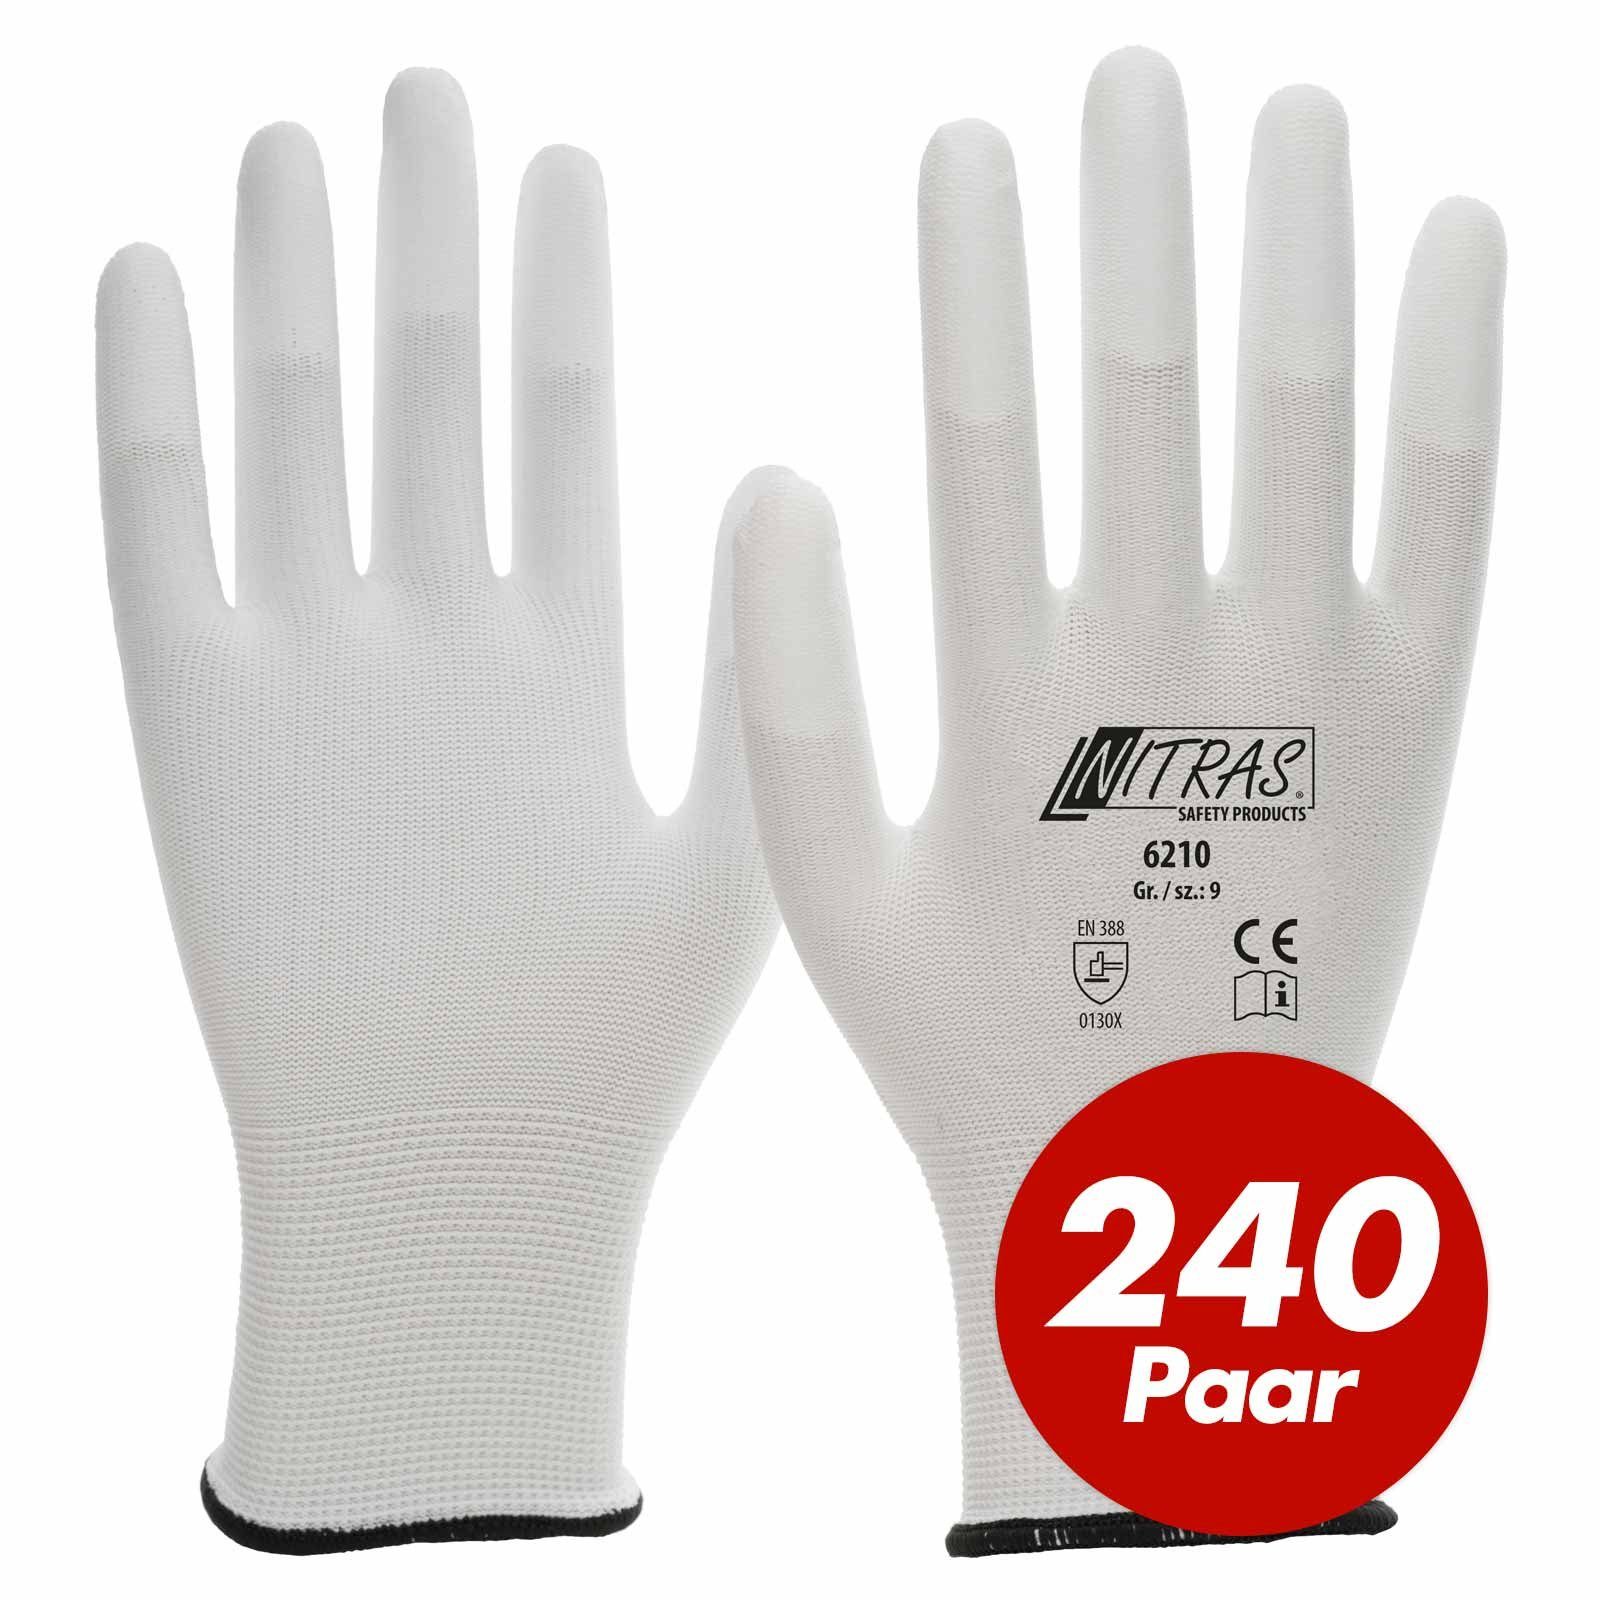 Nitras Nitril-Handschuhe NITRAS Nylon-Handschuhe 6210, PU-Fingerkuppenbeschichtung - 240 Paar (Spar-Set)